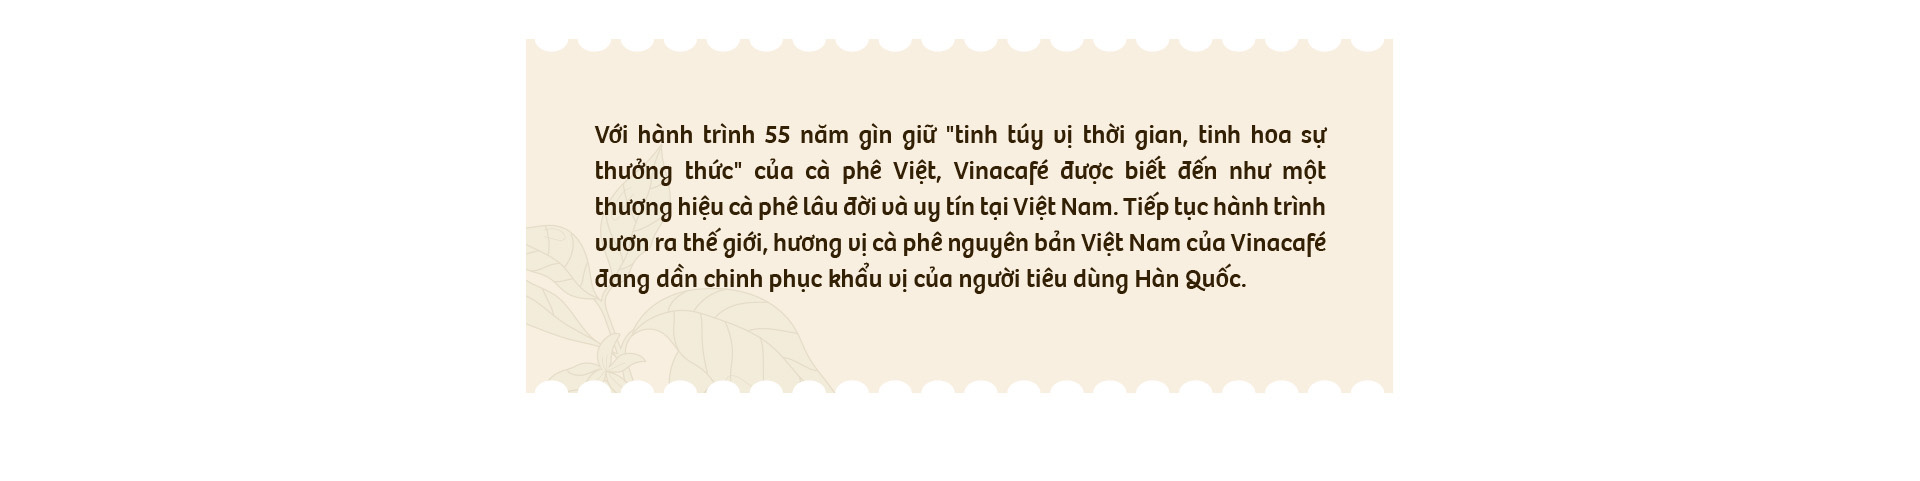 Nhìn lại hành trình ghi dấu ấn tượng tại Hàn Quốc của thương hiệu cà phê Việt Vinacafé - Ảnh 1.